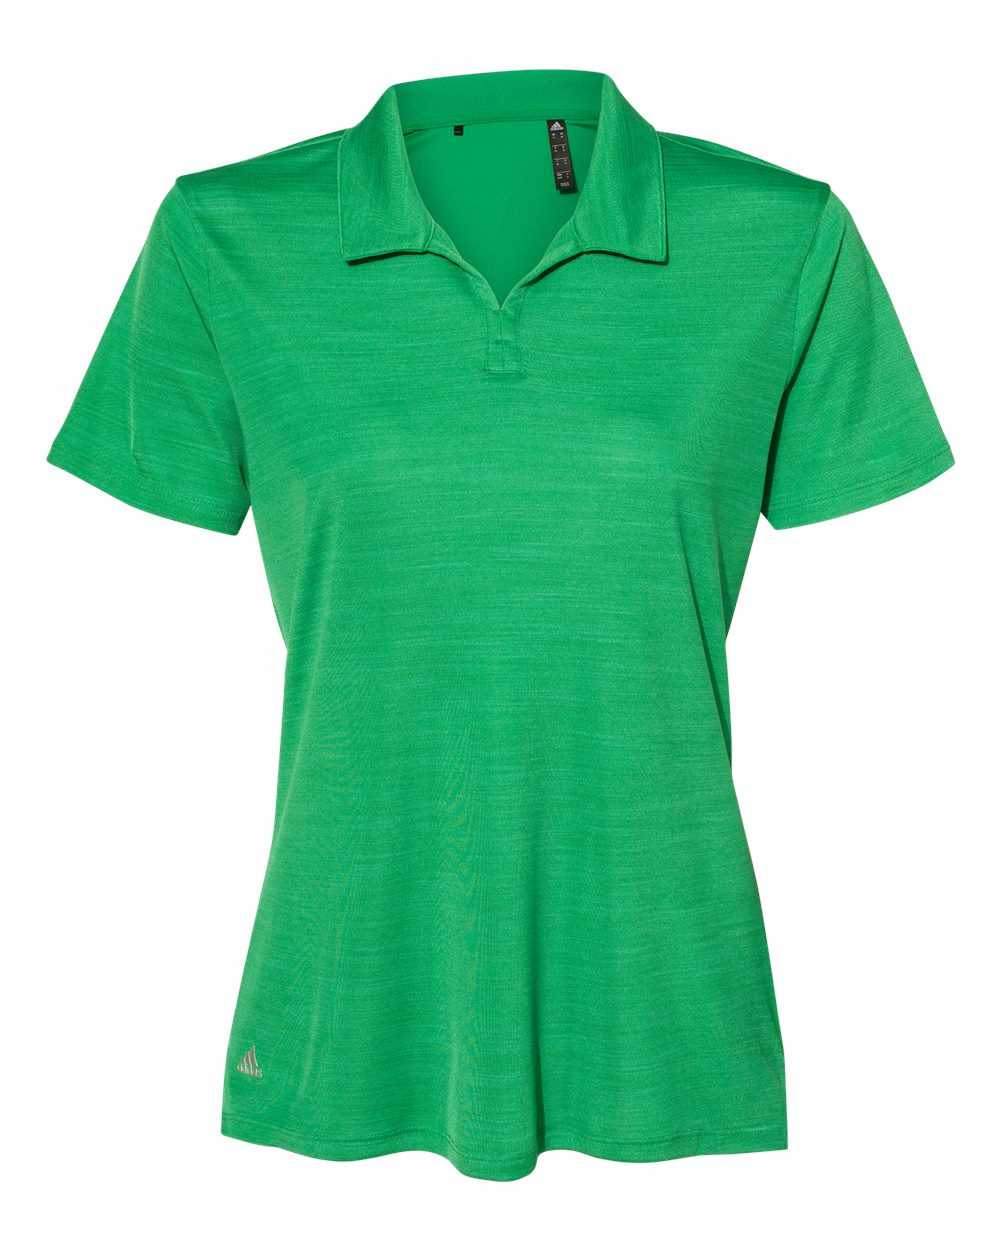 Adidas A403 Women's M??lange Sport Shirt - Team Green Melange - HIT a Double